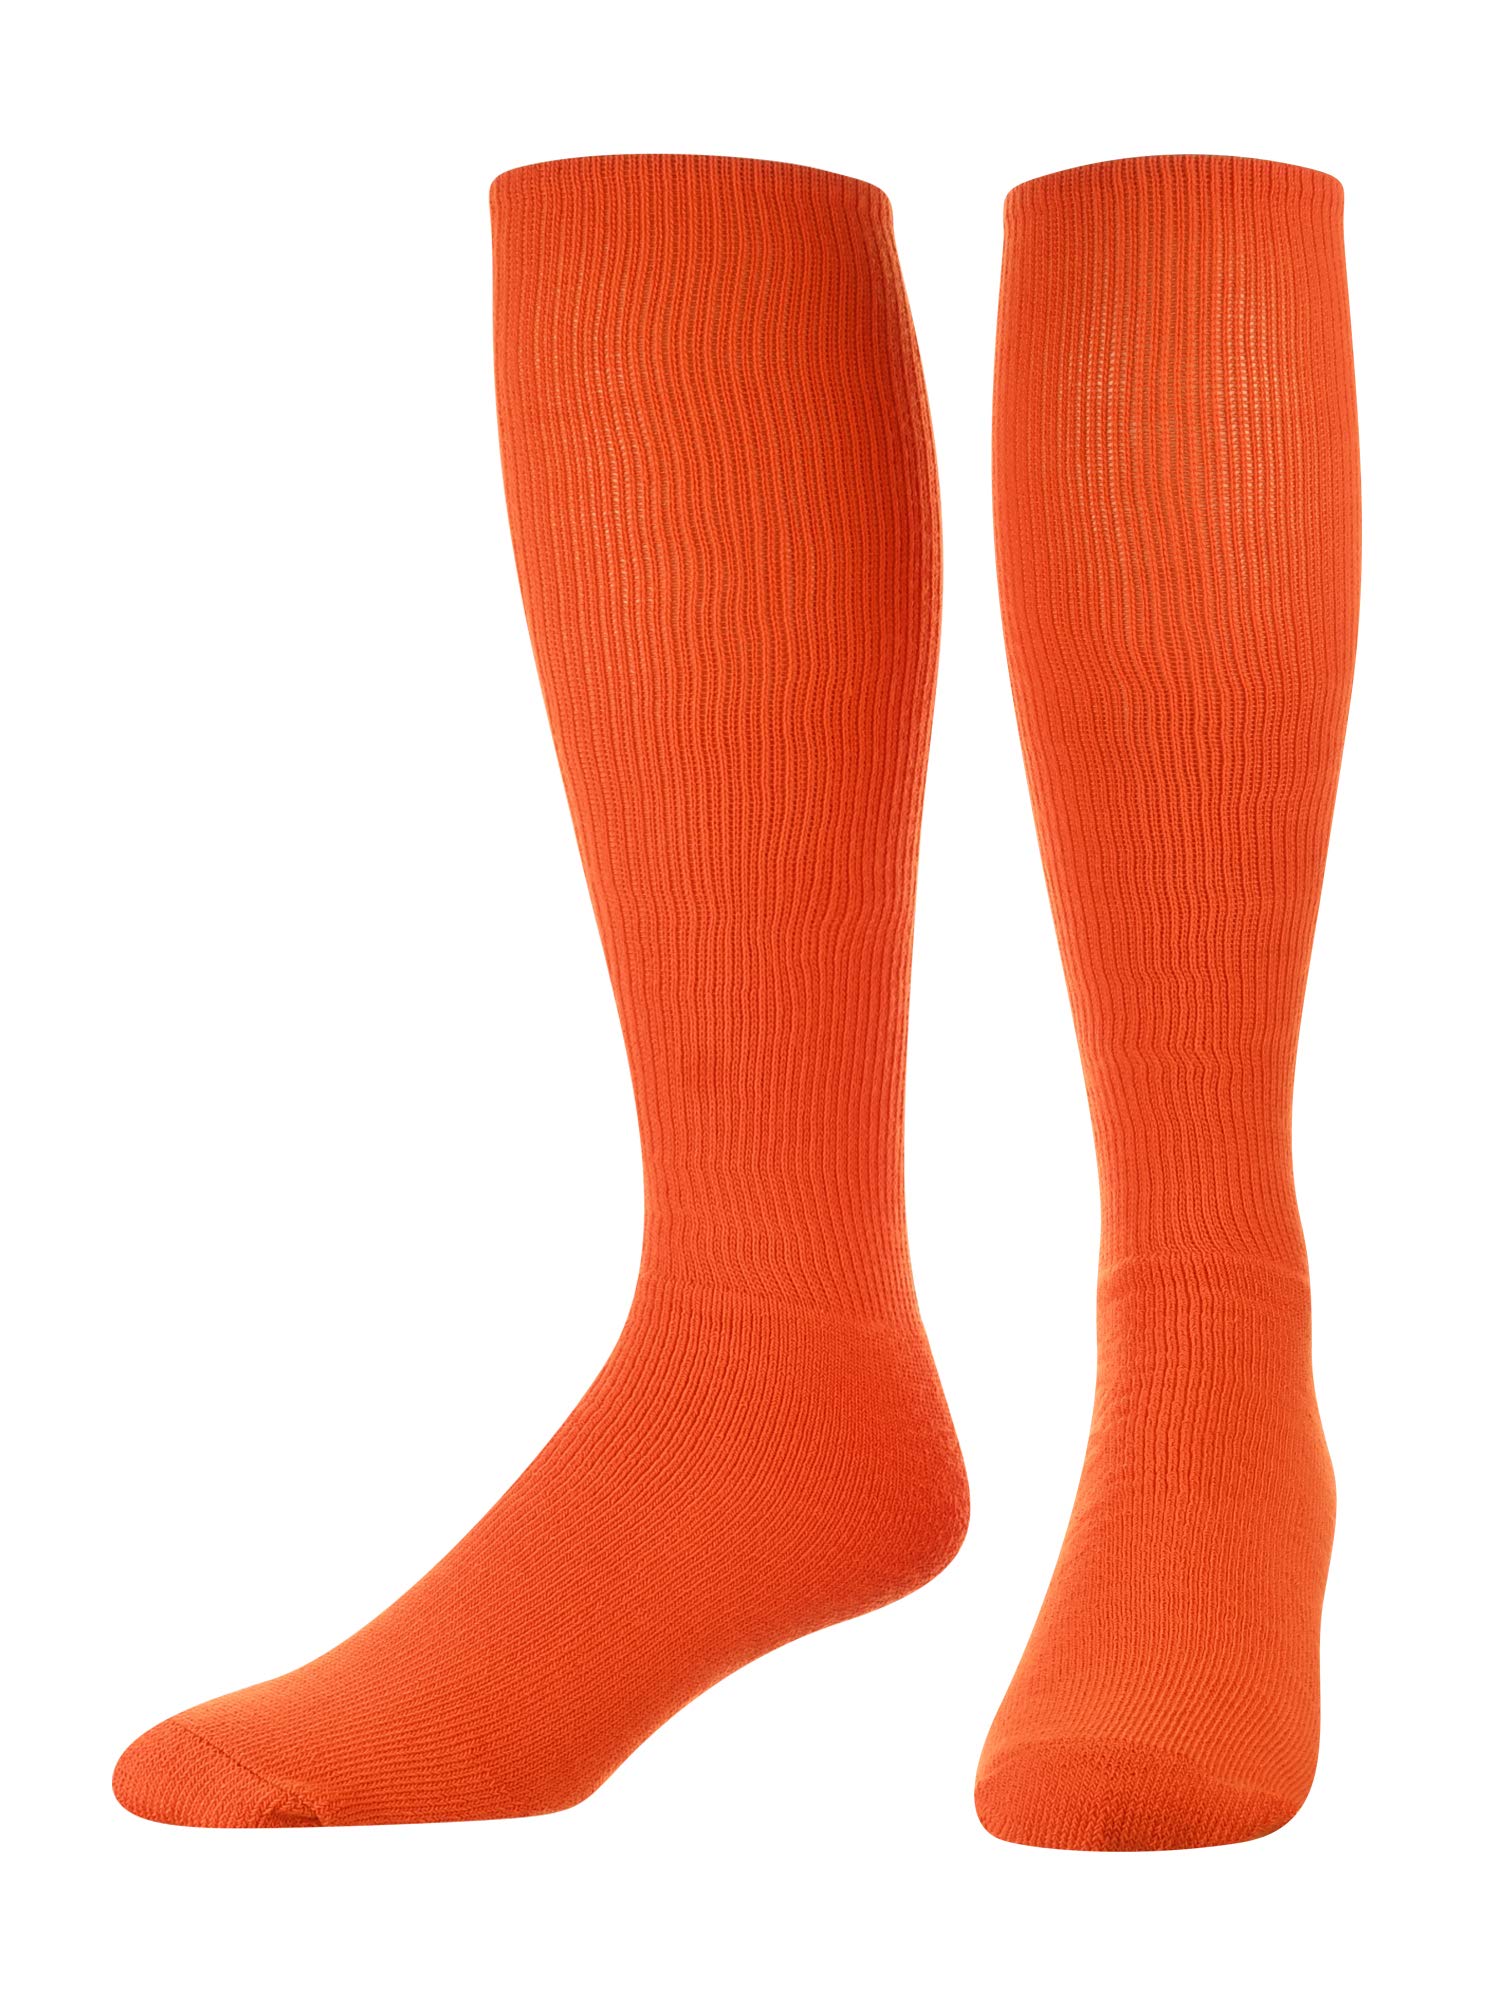 All-Sport Tube Socks for Men, Women & Kids — TCK